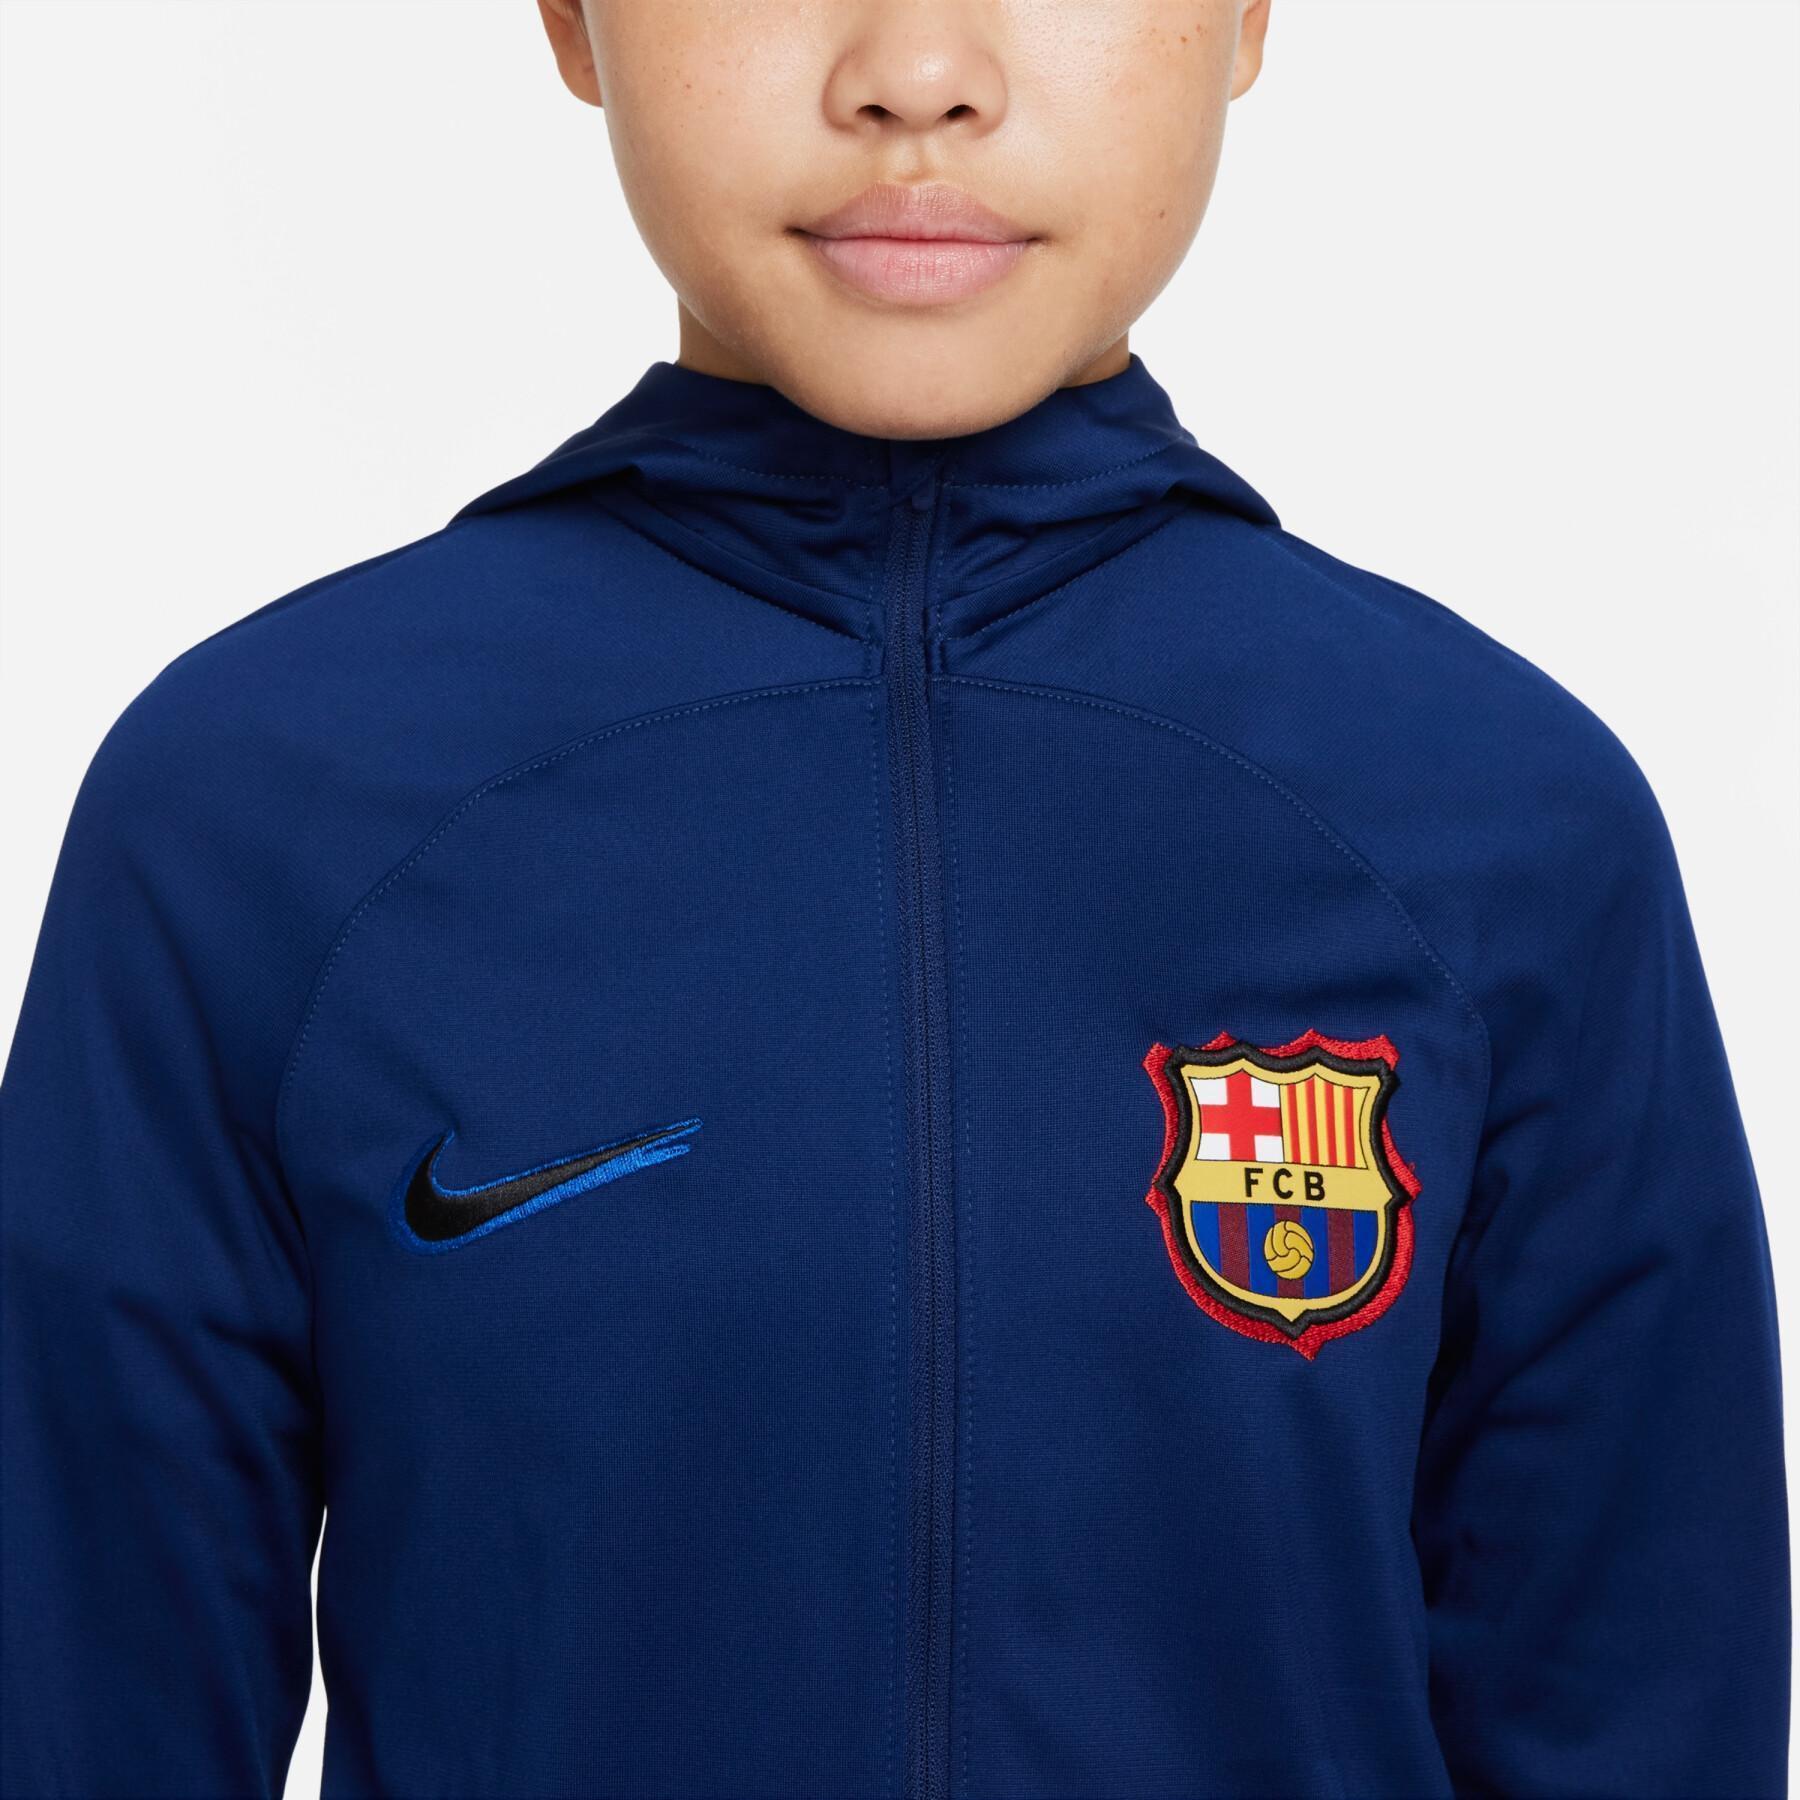 Juego de niños FC Barcelone Strike 2021/22